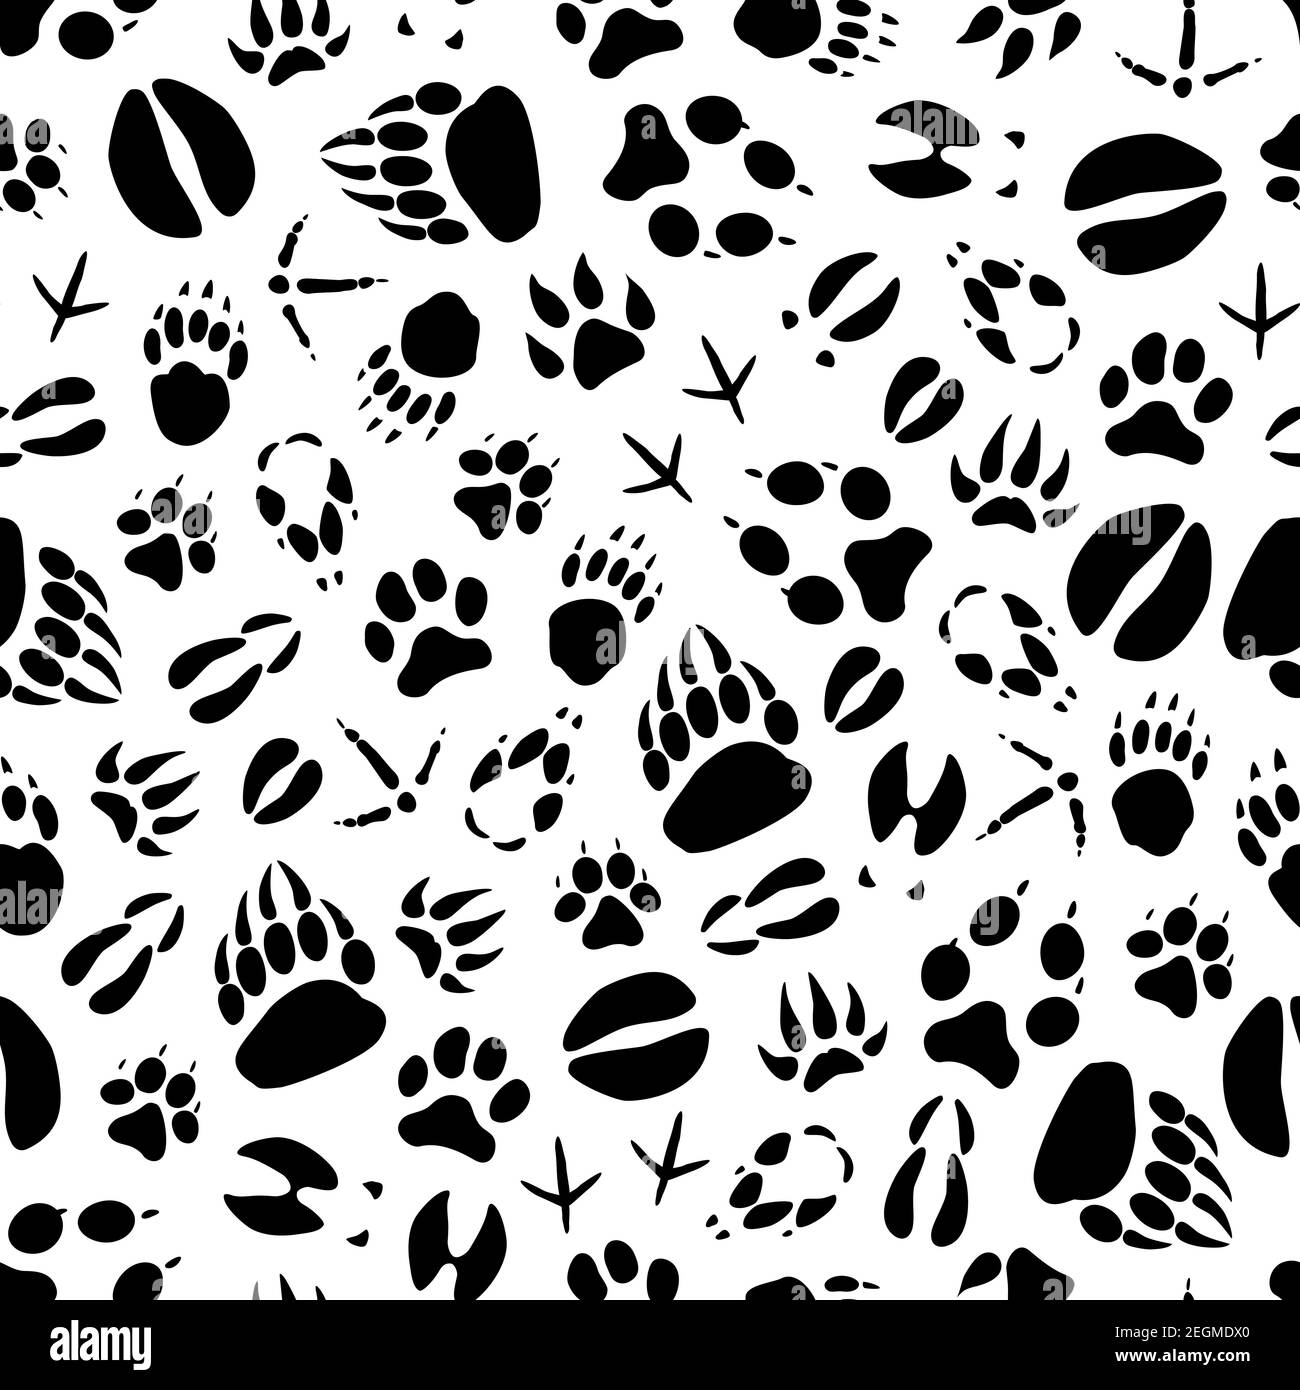 Tiere und Vögel Fußabdrücke Nahtloses Muster auf Schnee. Vektor Wildbär oder Wolf und Hase Pfoten Spuren, Wildschwein oder Elch und Hirsch Hufabdrücke oder Krähe und s Stock Vektor